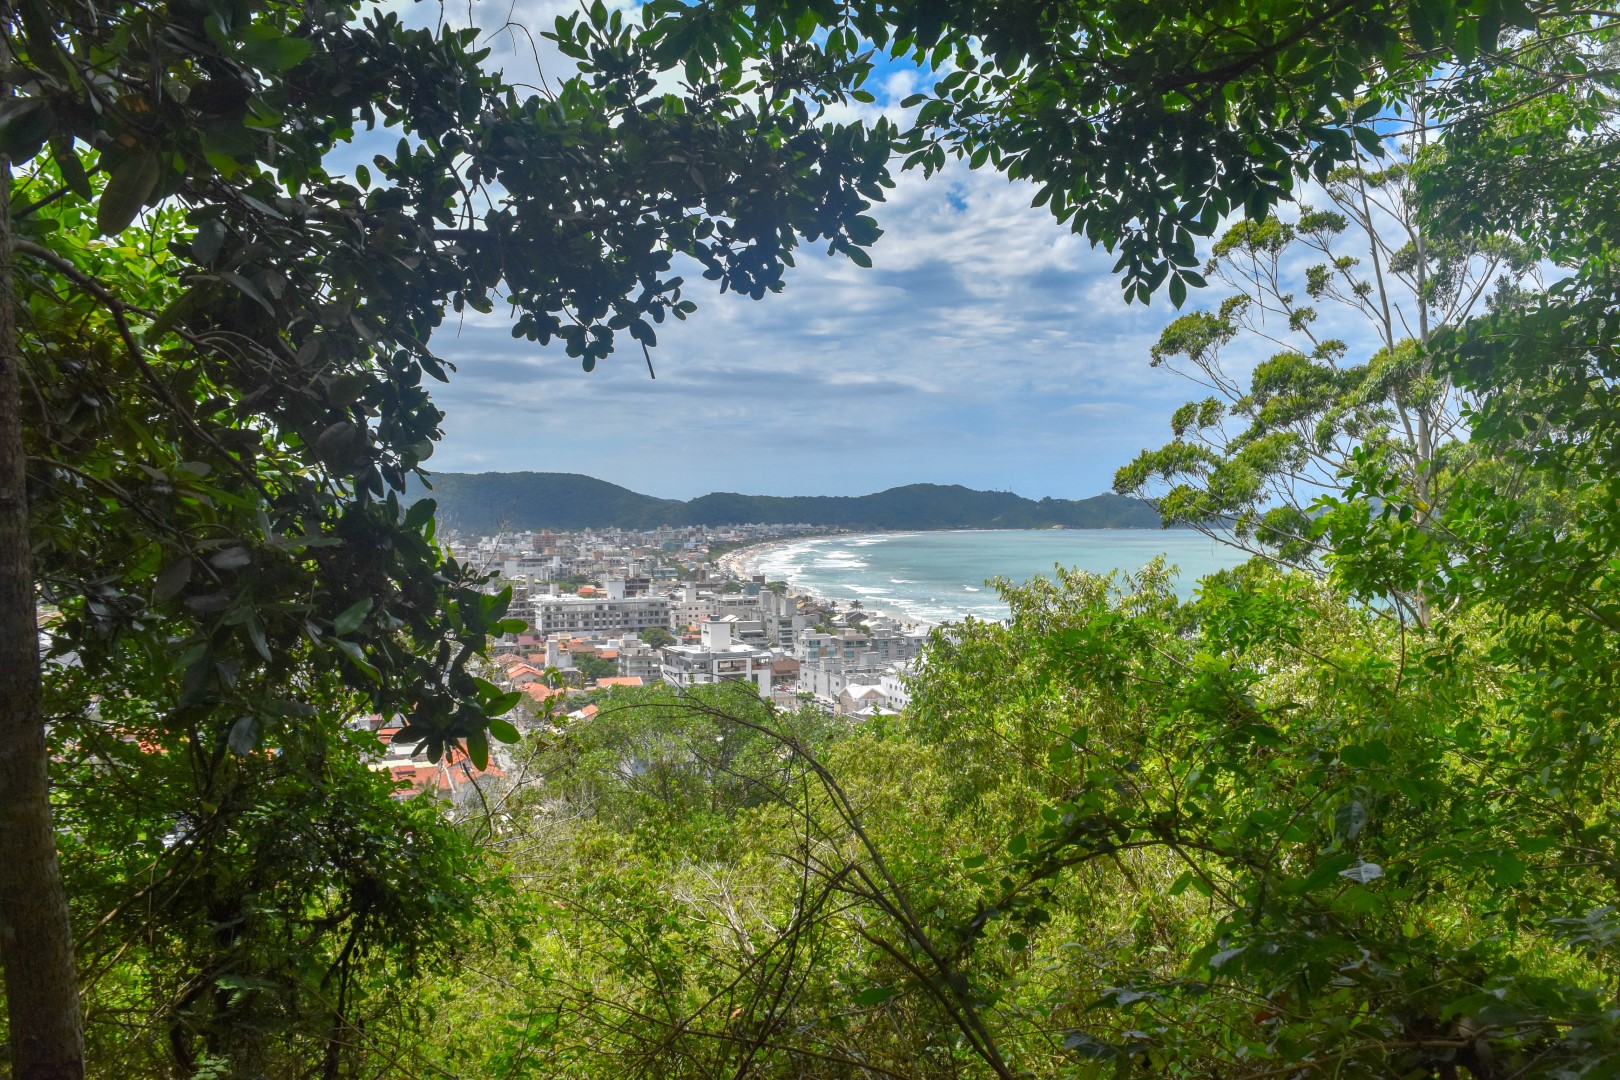 Trilha do Morro do Macaco - Canto - Grande, Bombinhas - SC, 88215-000